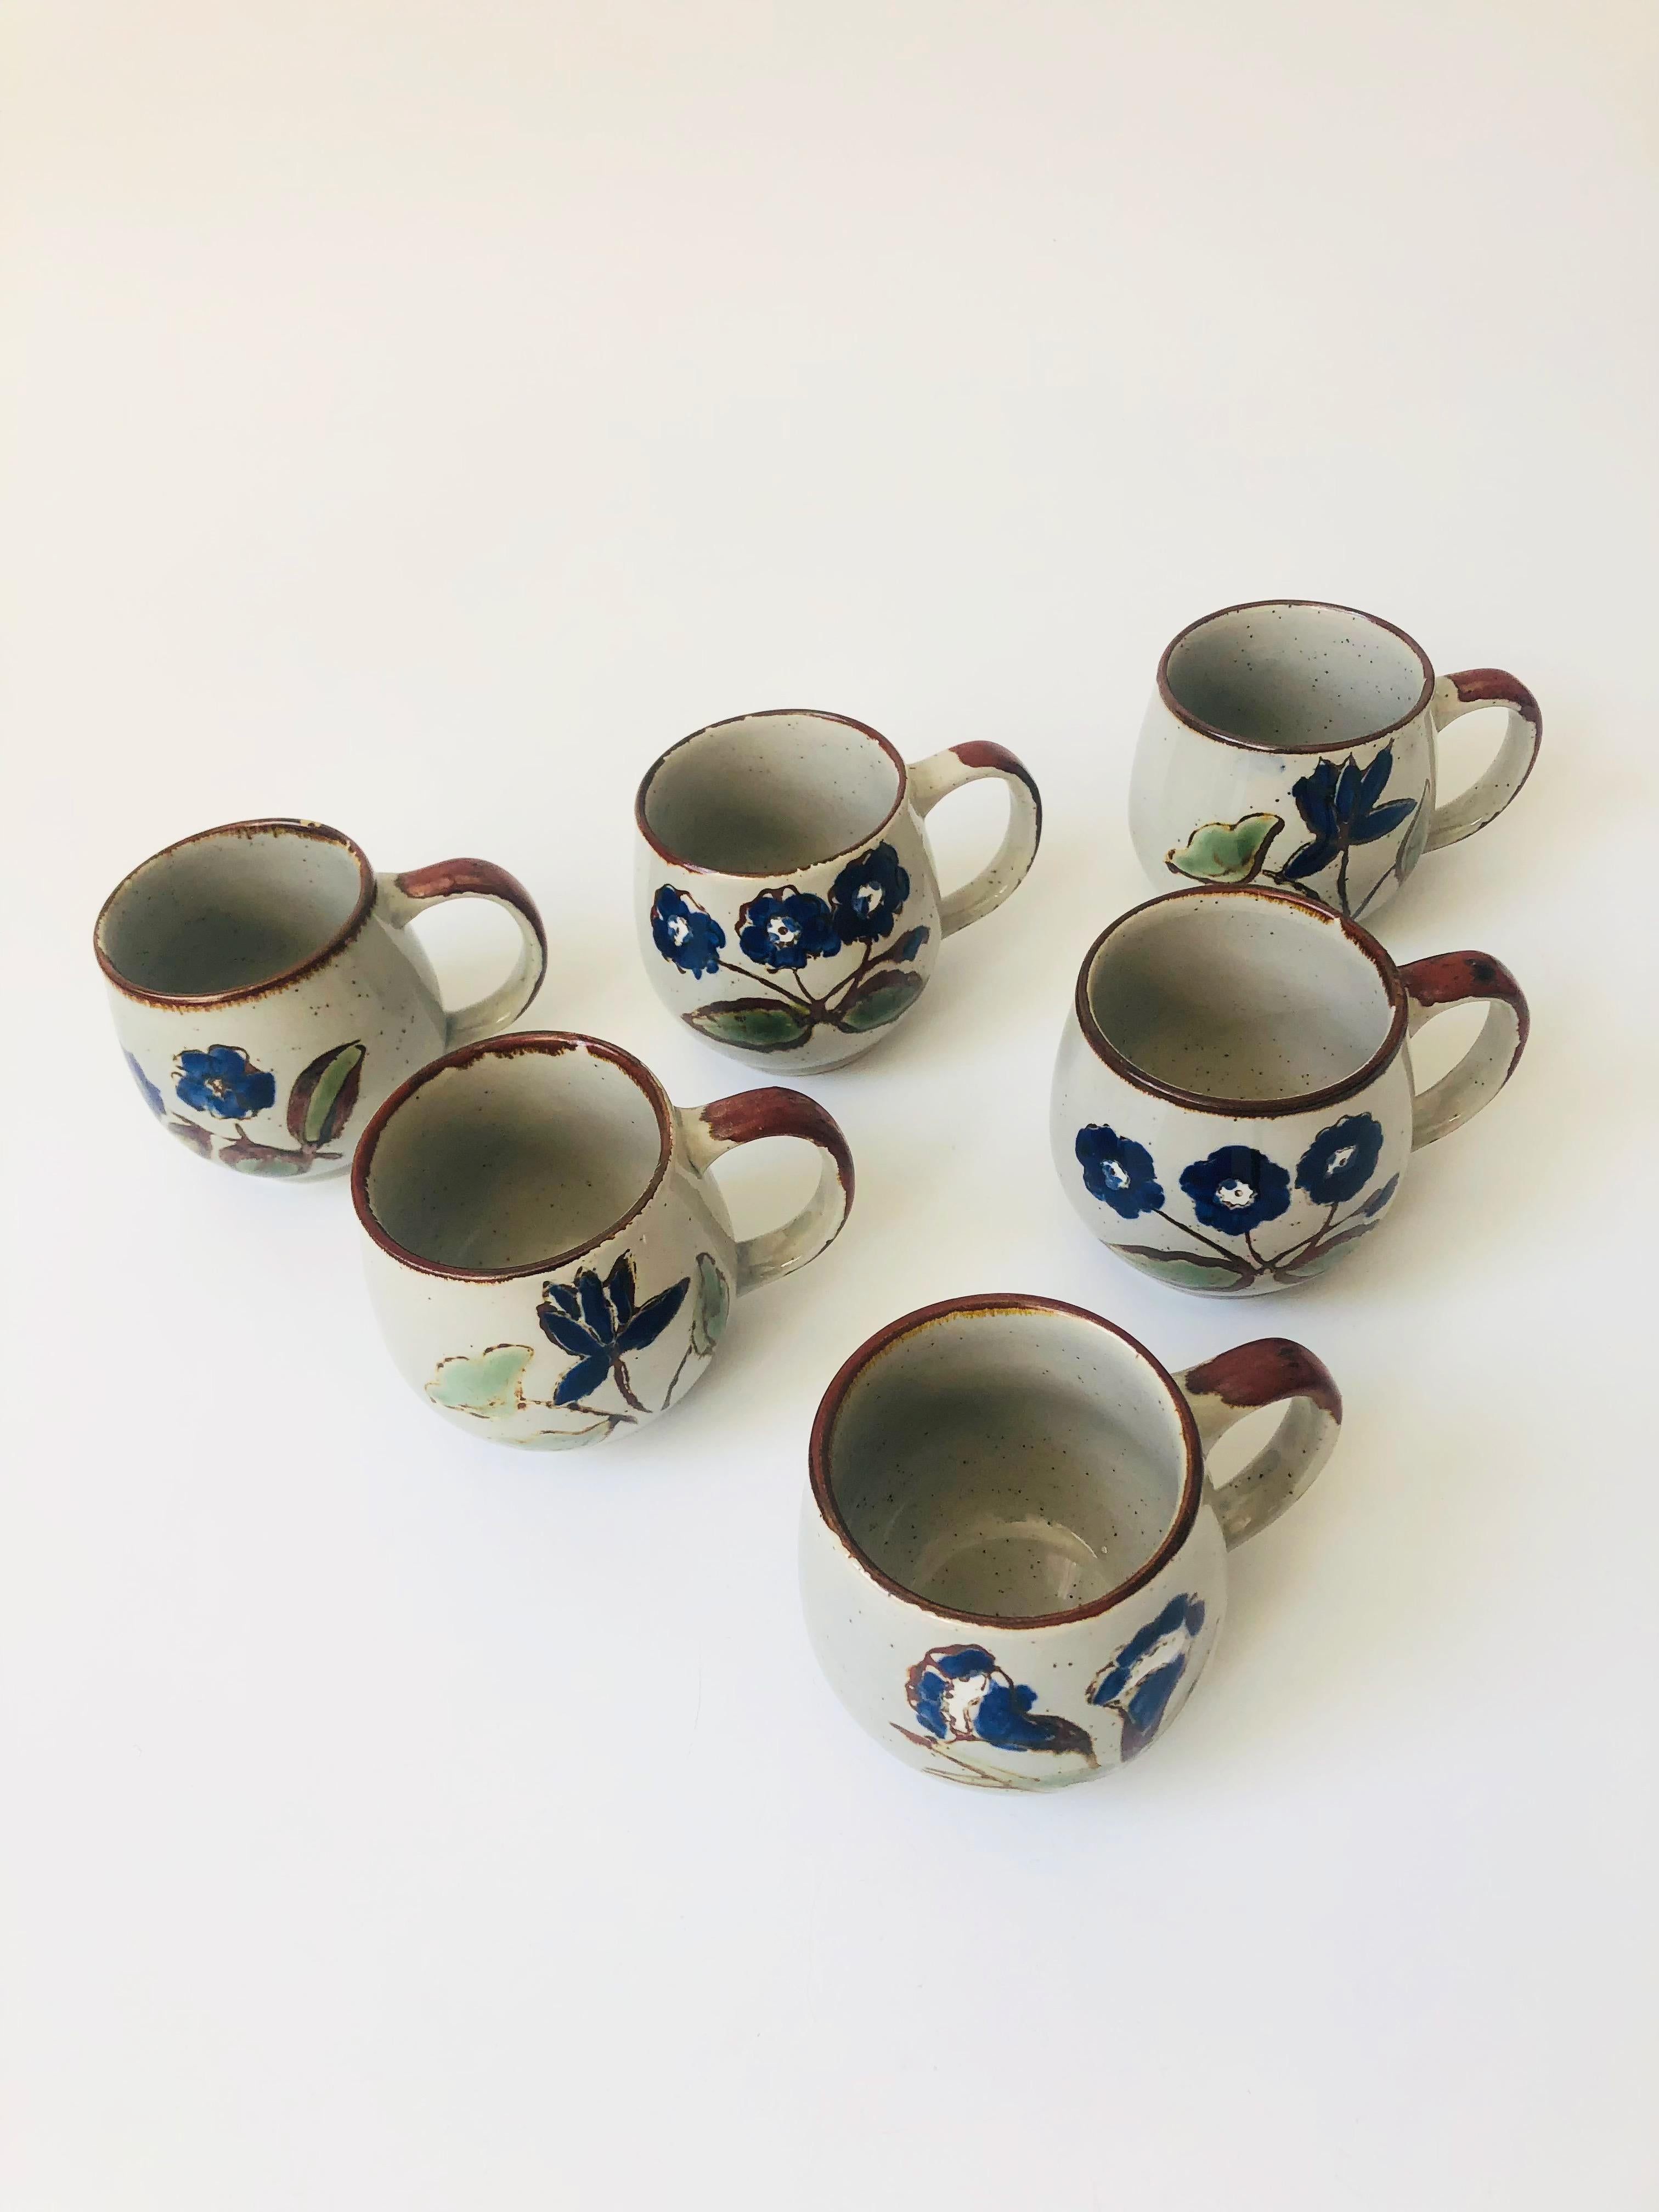 Ein Satz von 6 alten Tassen aus Keramik. Jedes Stück weist ein süßes, handgemaltes blaues Blumenmuster auf einer gesprenkelten grauen Grundfarbe auf.
 